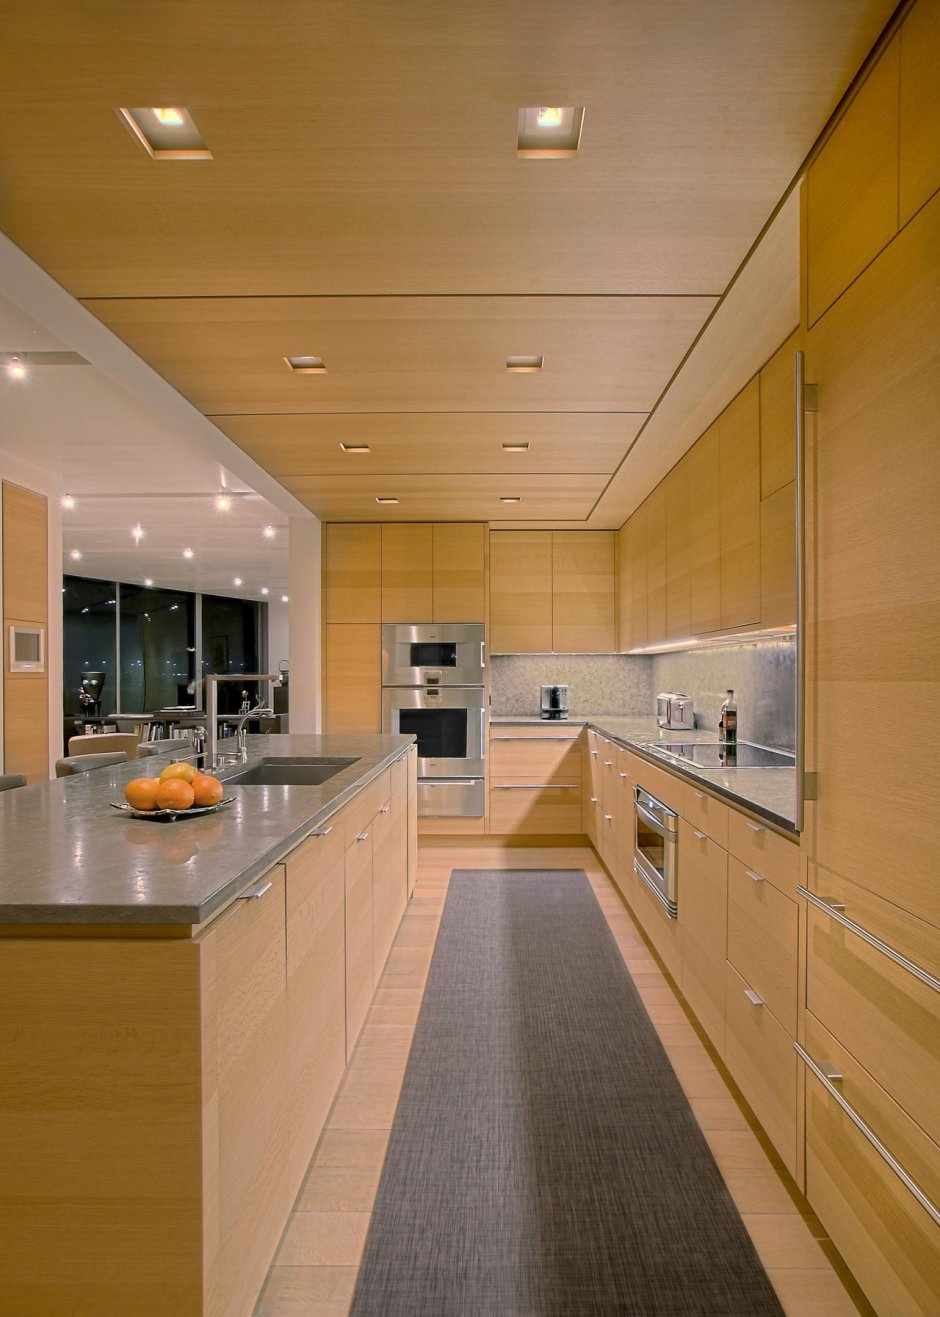 Показать панели на потолок на кухню серого цвета